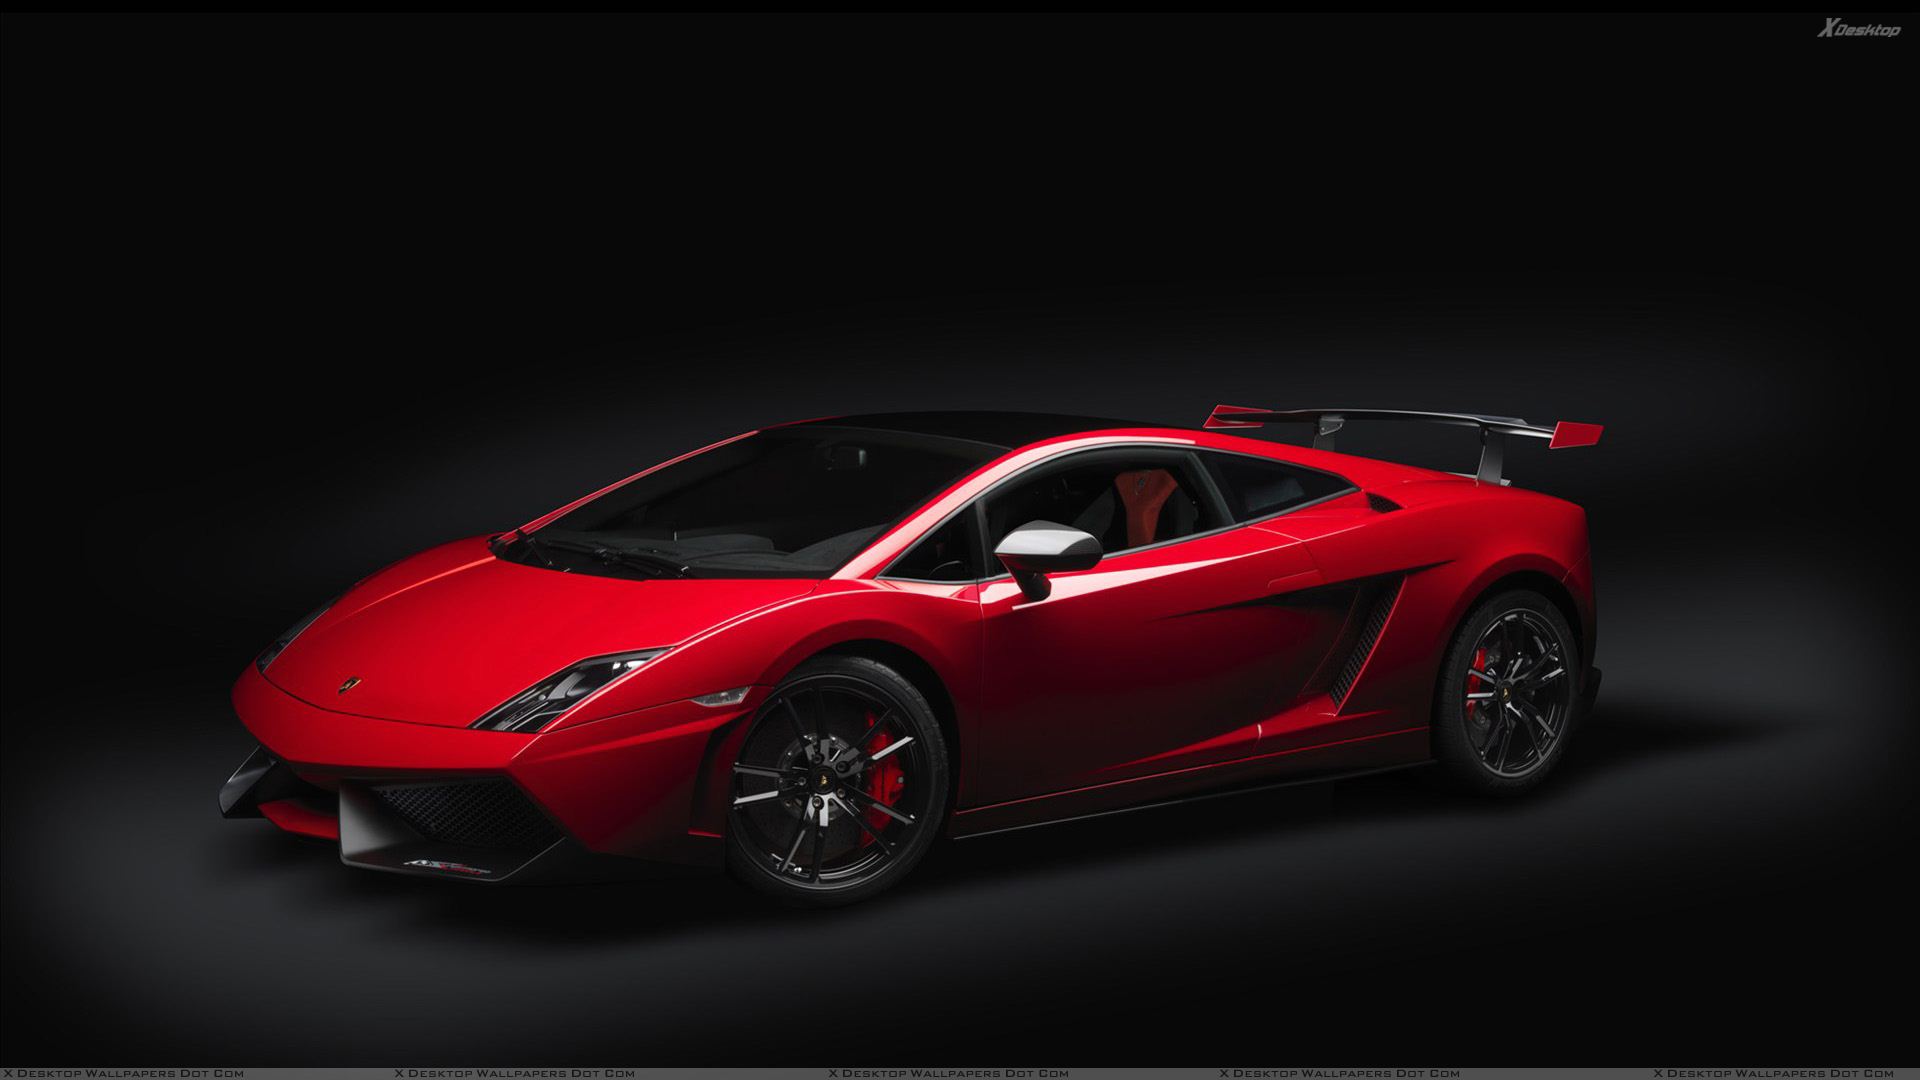 Cool Red Lamborghini Wallpapers - image